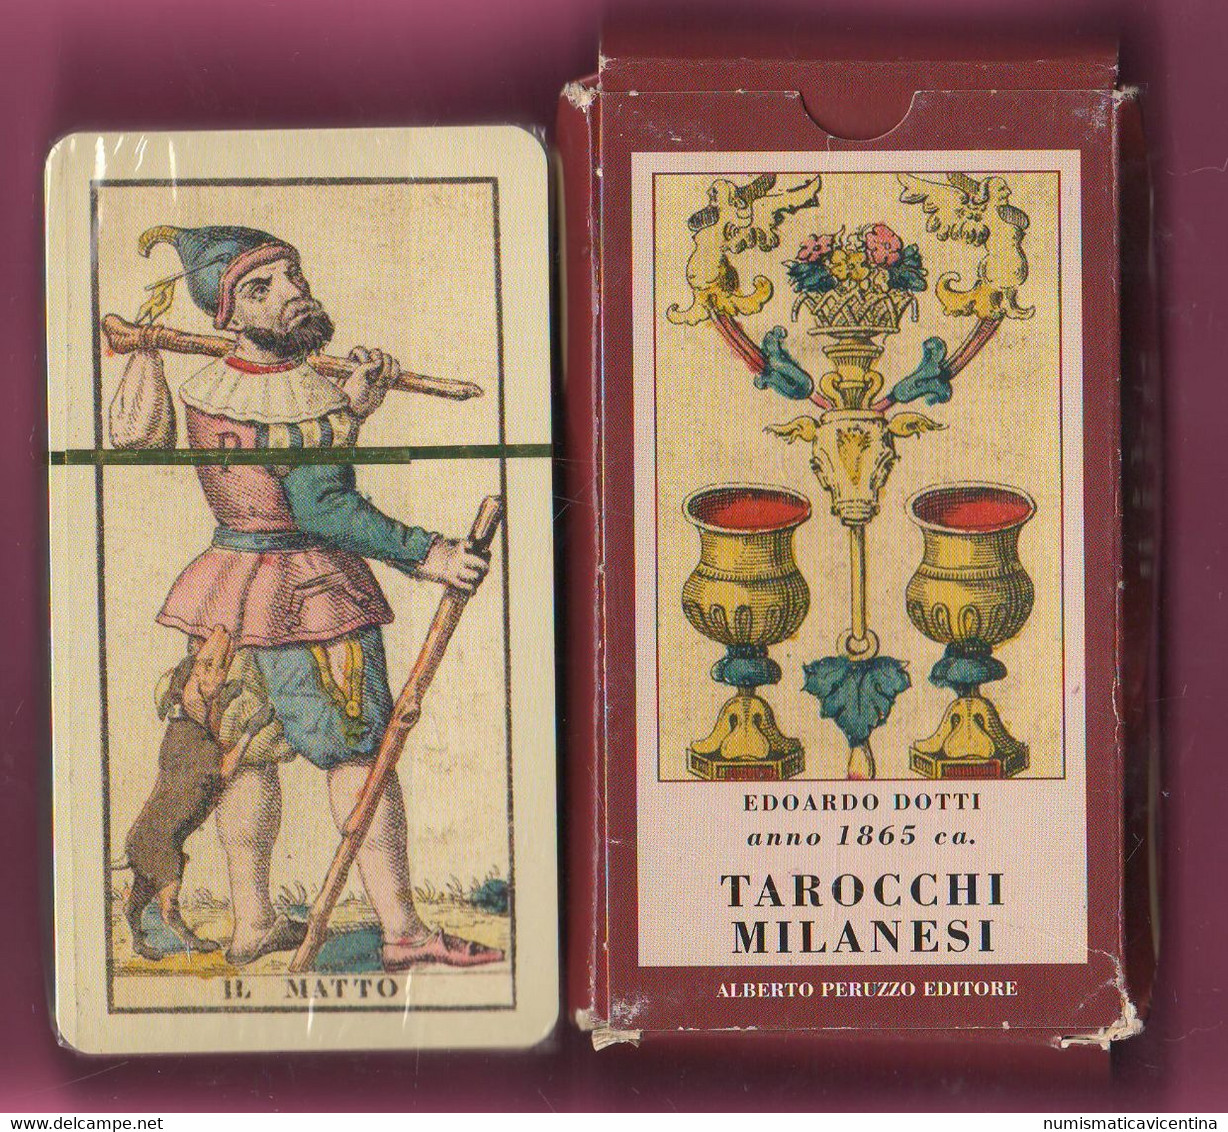 Carte da gioco - 78 carte dei Tarocchi Milanesi A.Peruzzo editore le Tarot  de Milan the Tarot of Milan 78 cards